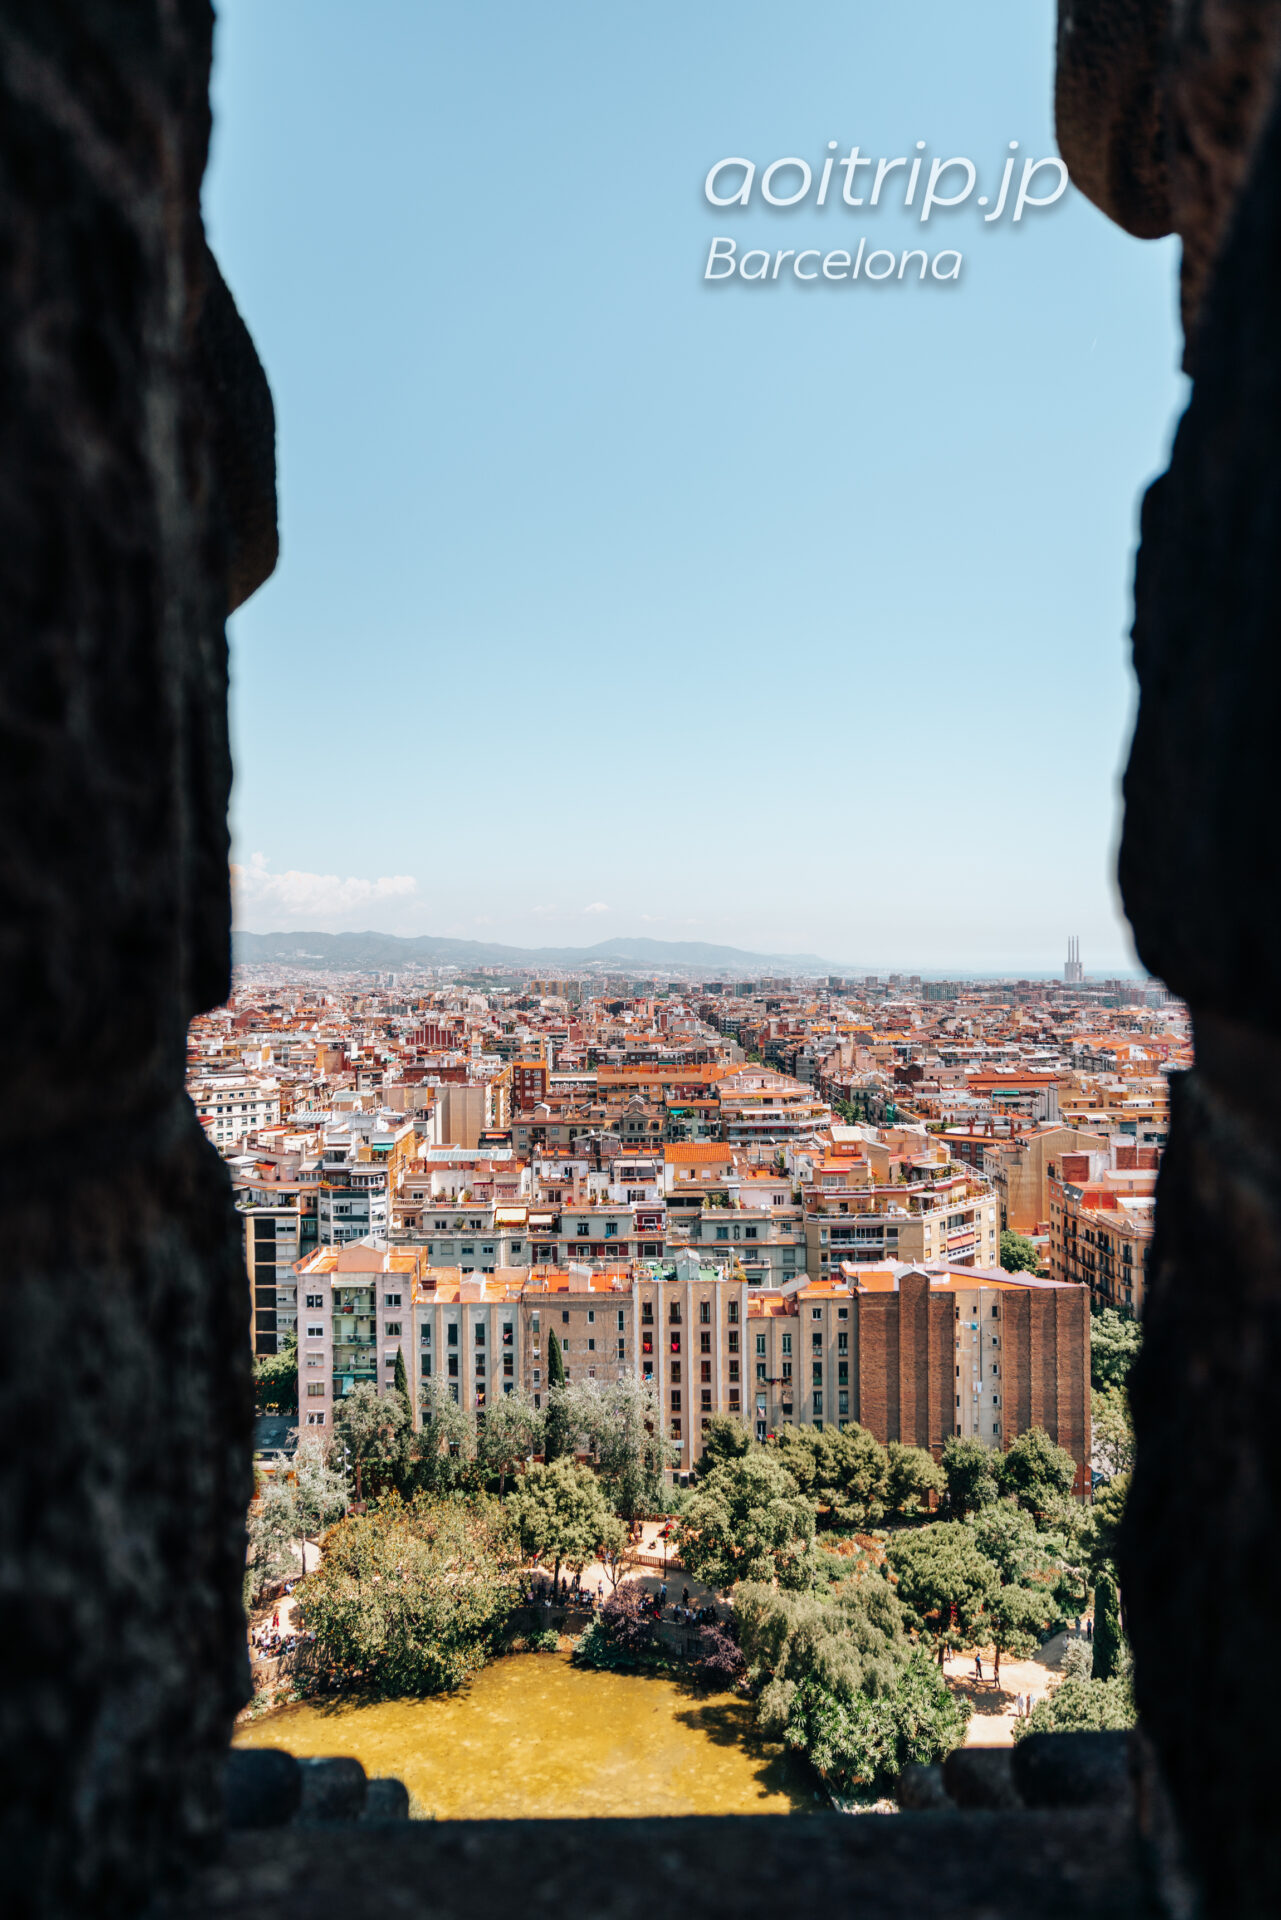 バルセロナ サグラダファミリアの鐘楼からの眺望